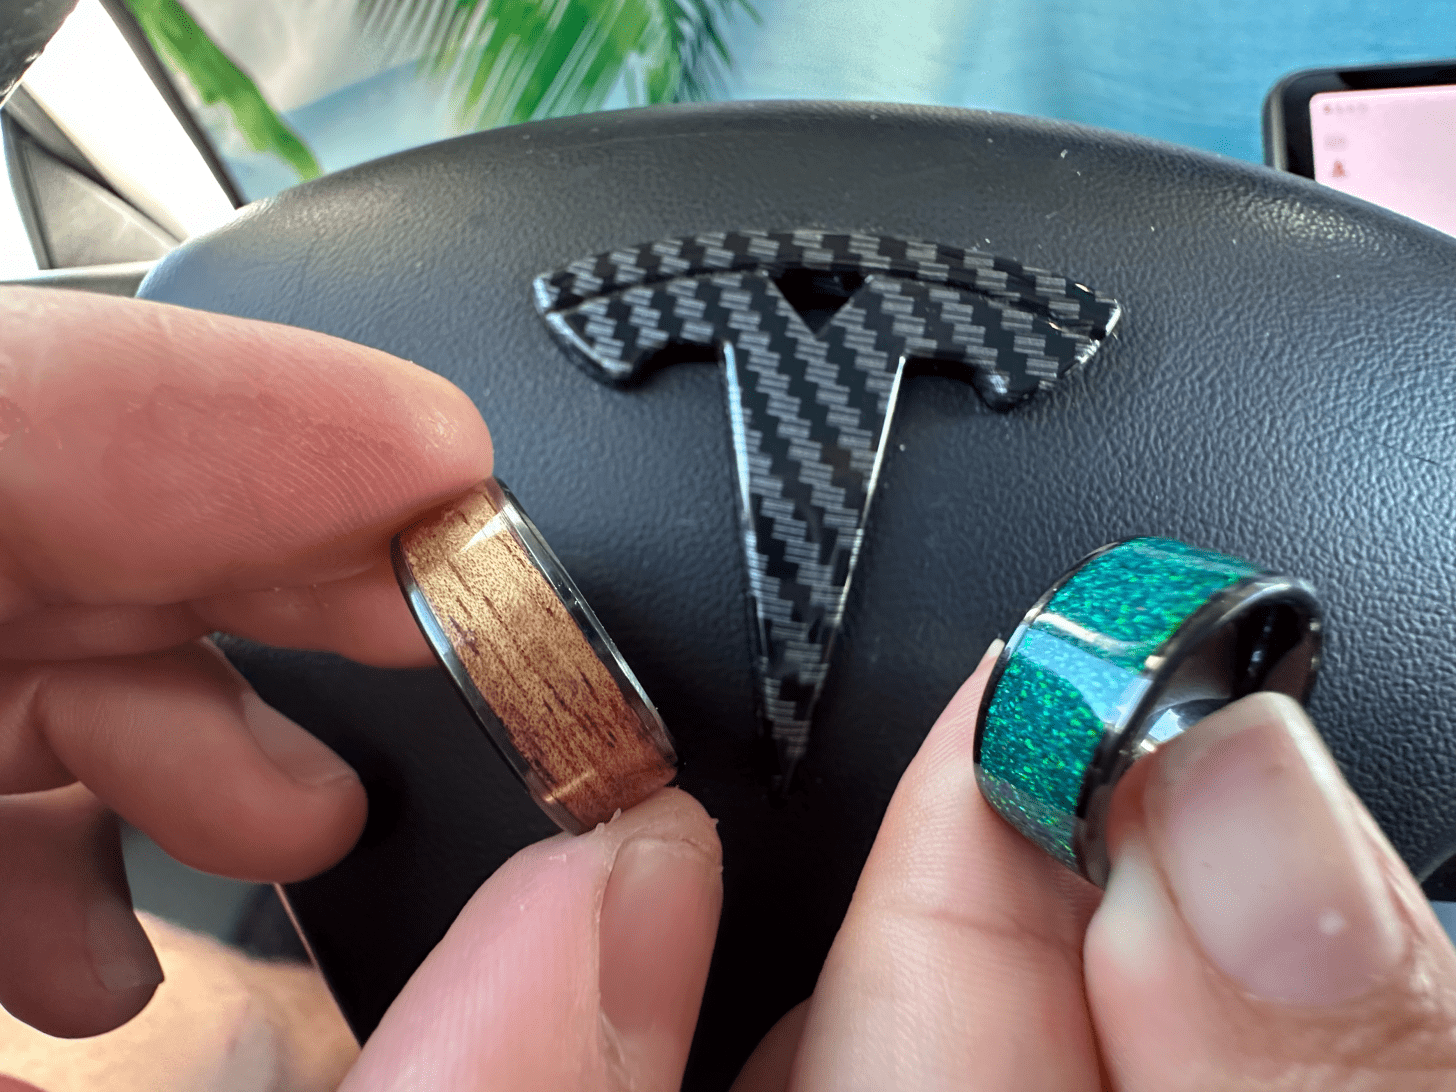 Verrouillez votre Tesla à l'aide d'un porte-clés tiers.